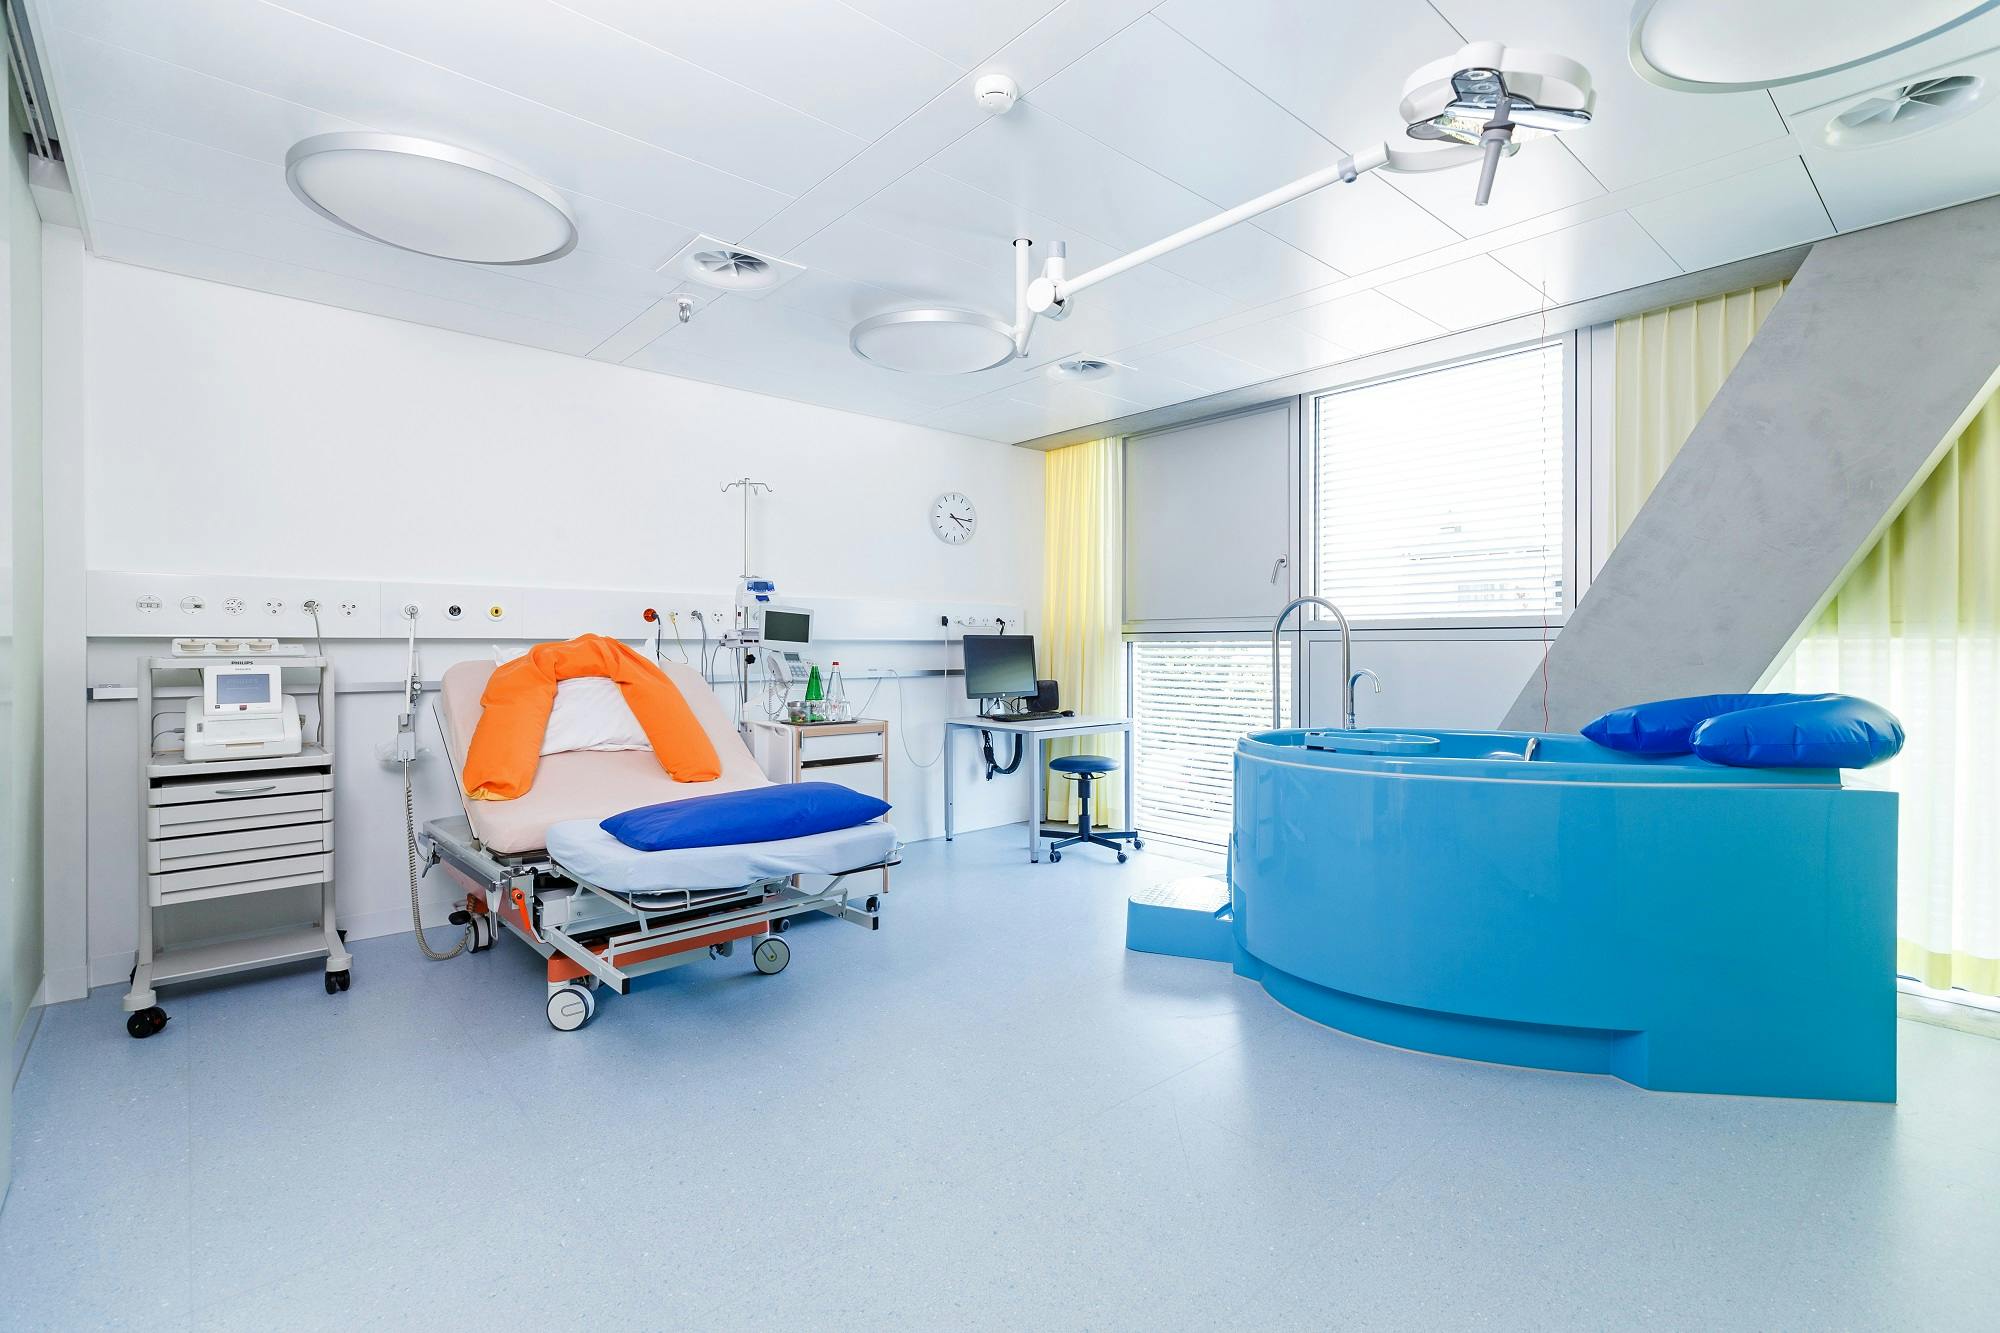 Krankenhaus-Geburtszimmer mit Entbindungsbett und Geburtsbadewanne.